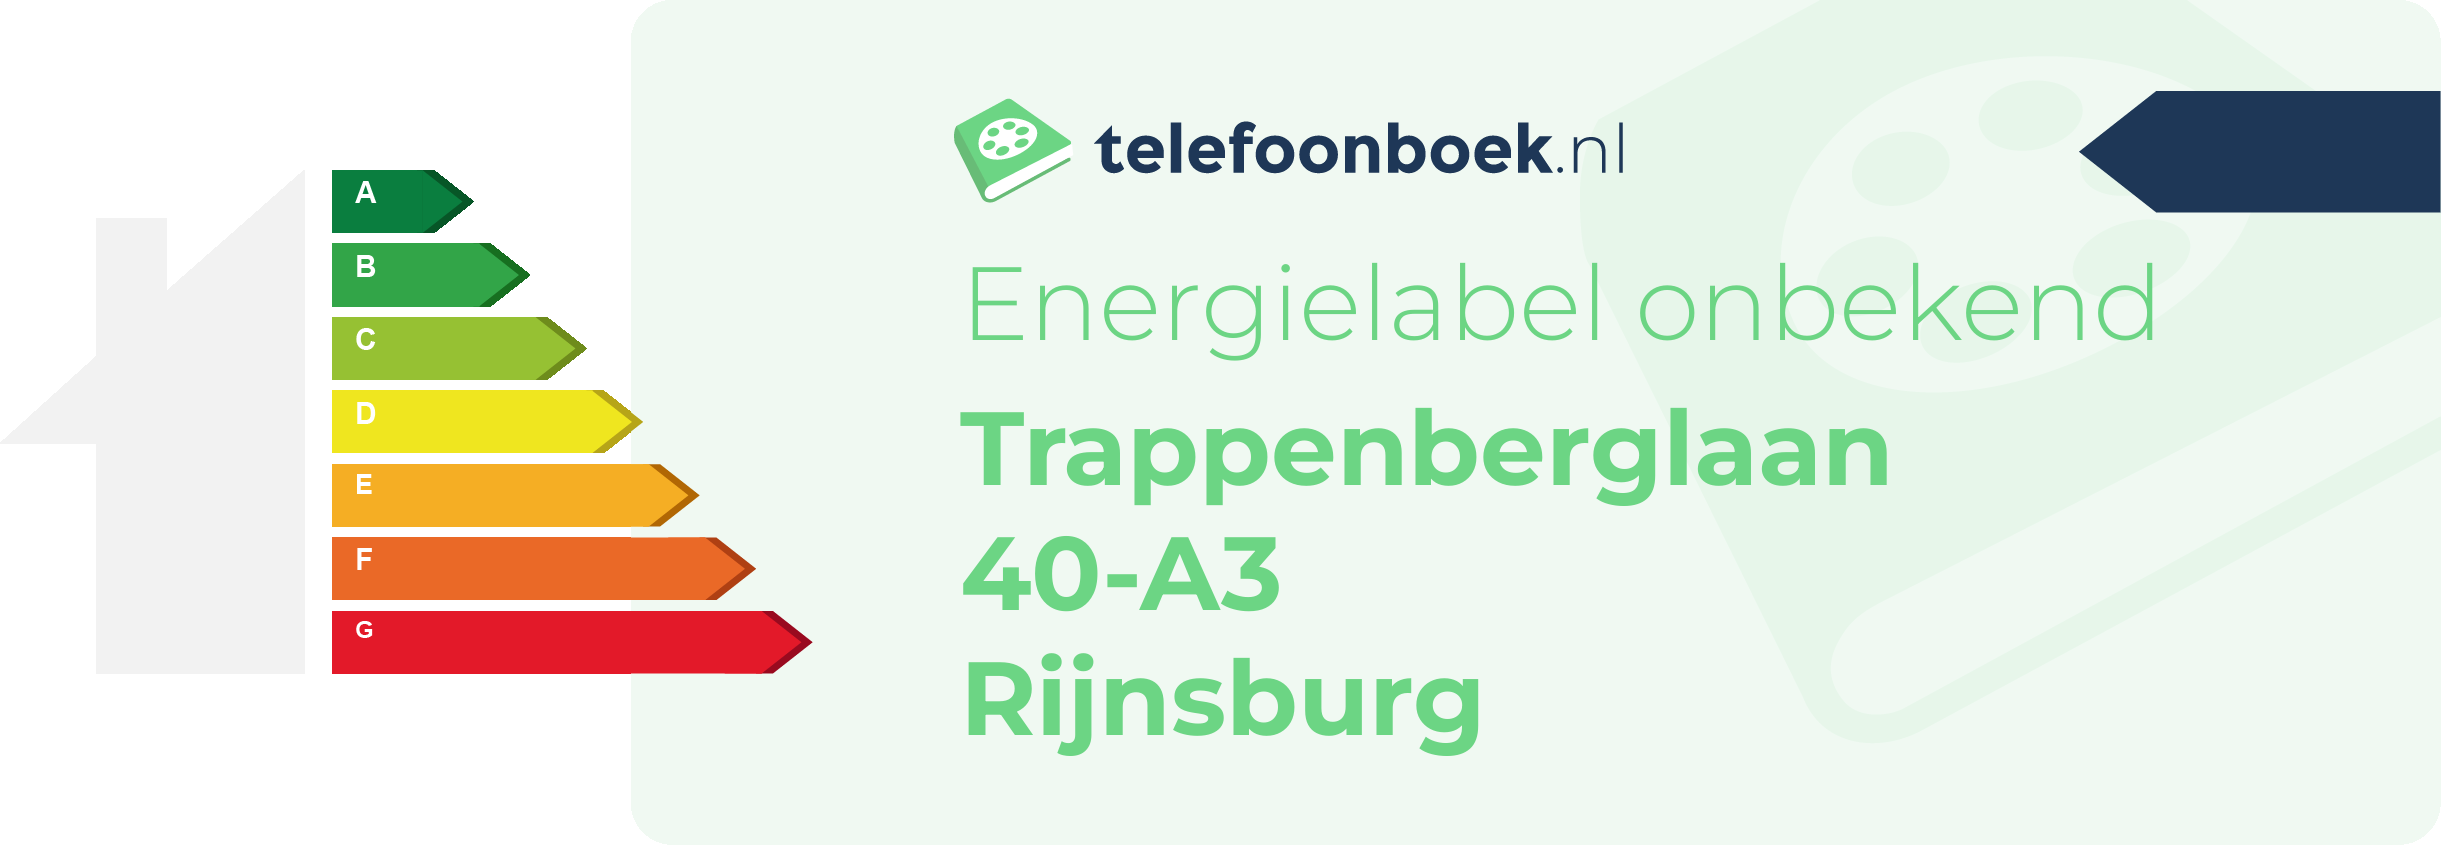 Energielabel Trappenberglaan 40-A3 Rijnsburg